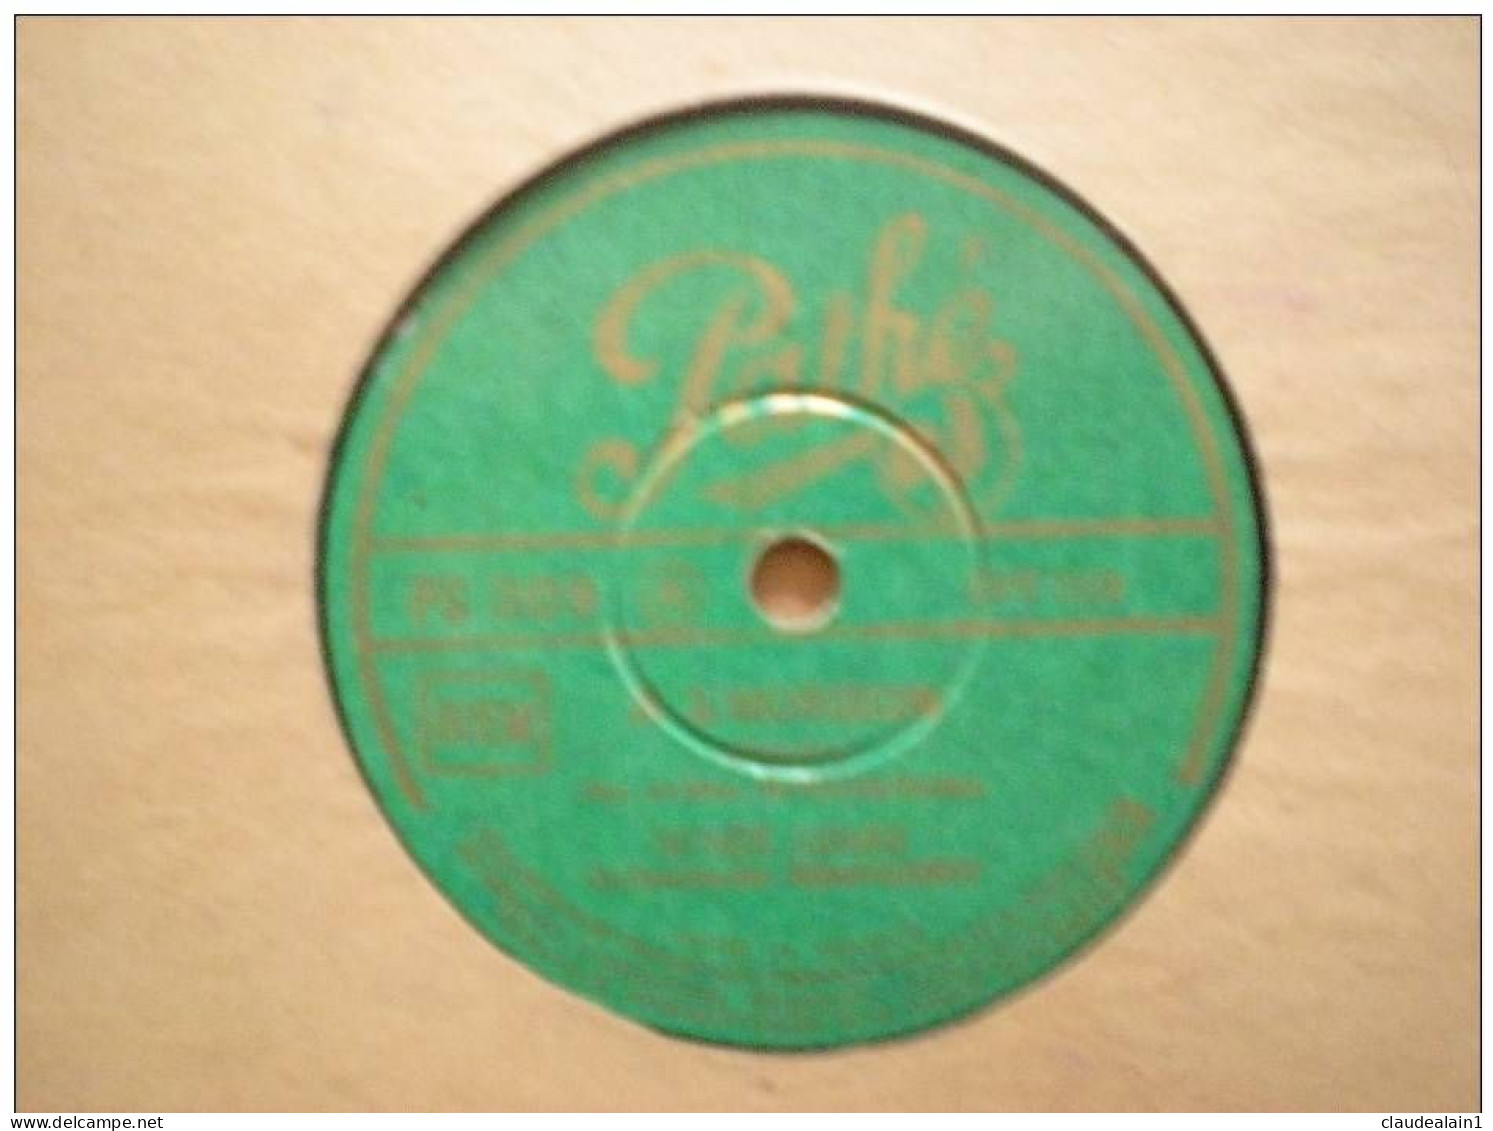 DISQUE PATHE VINYLE 78T - RENEE LEBAS - A L'HORIZON - A PARIS - 78 Rpm - Gramophone Records